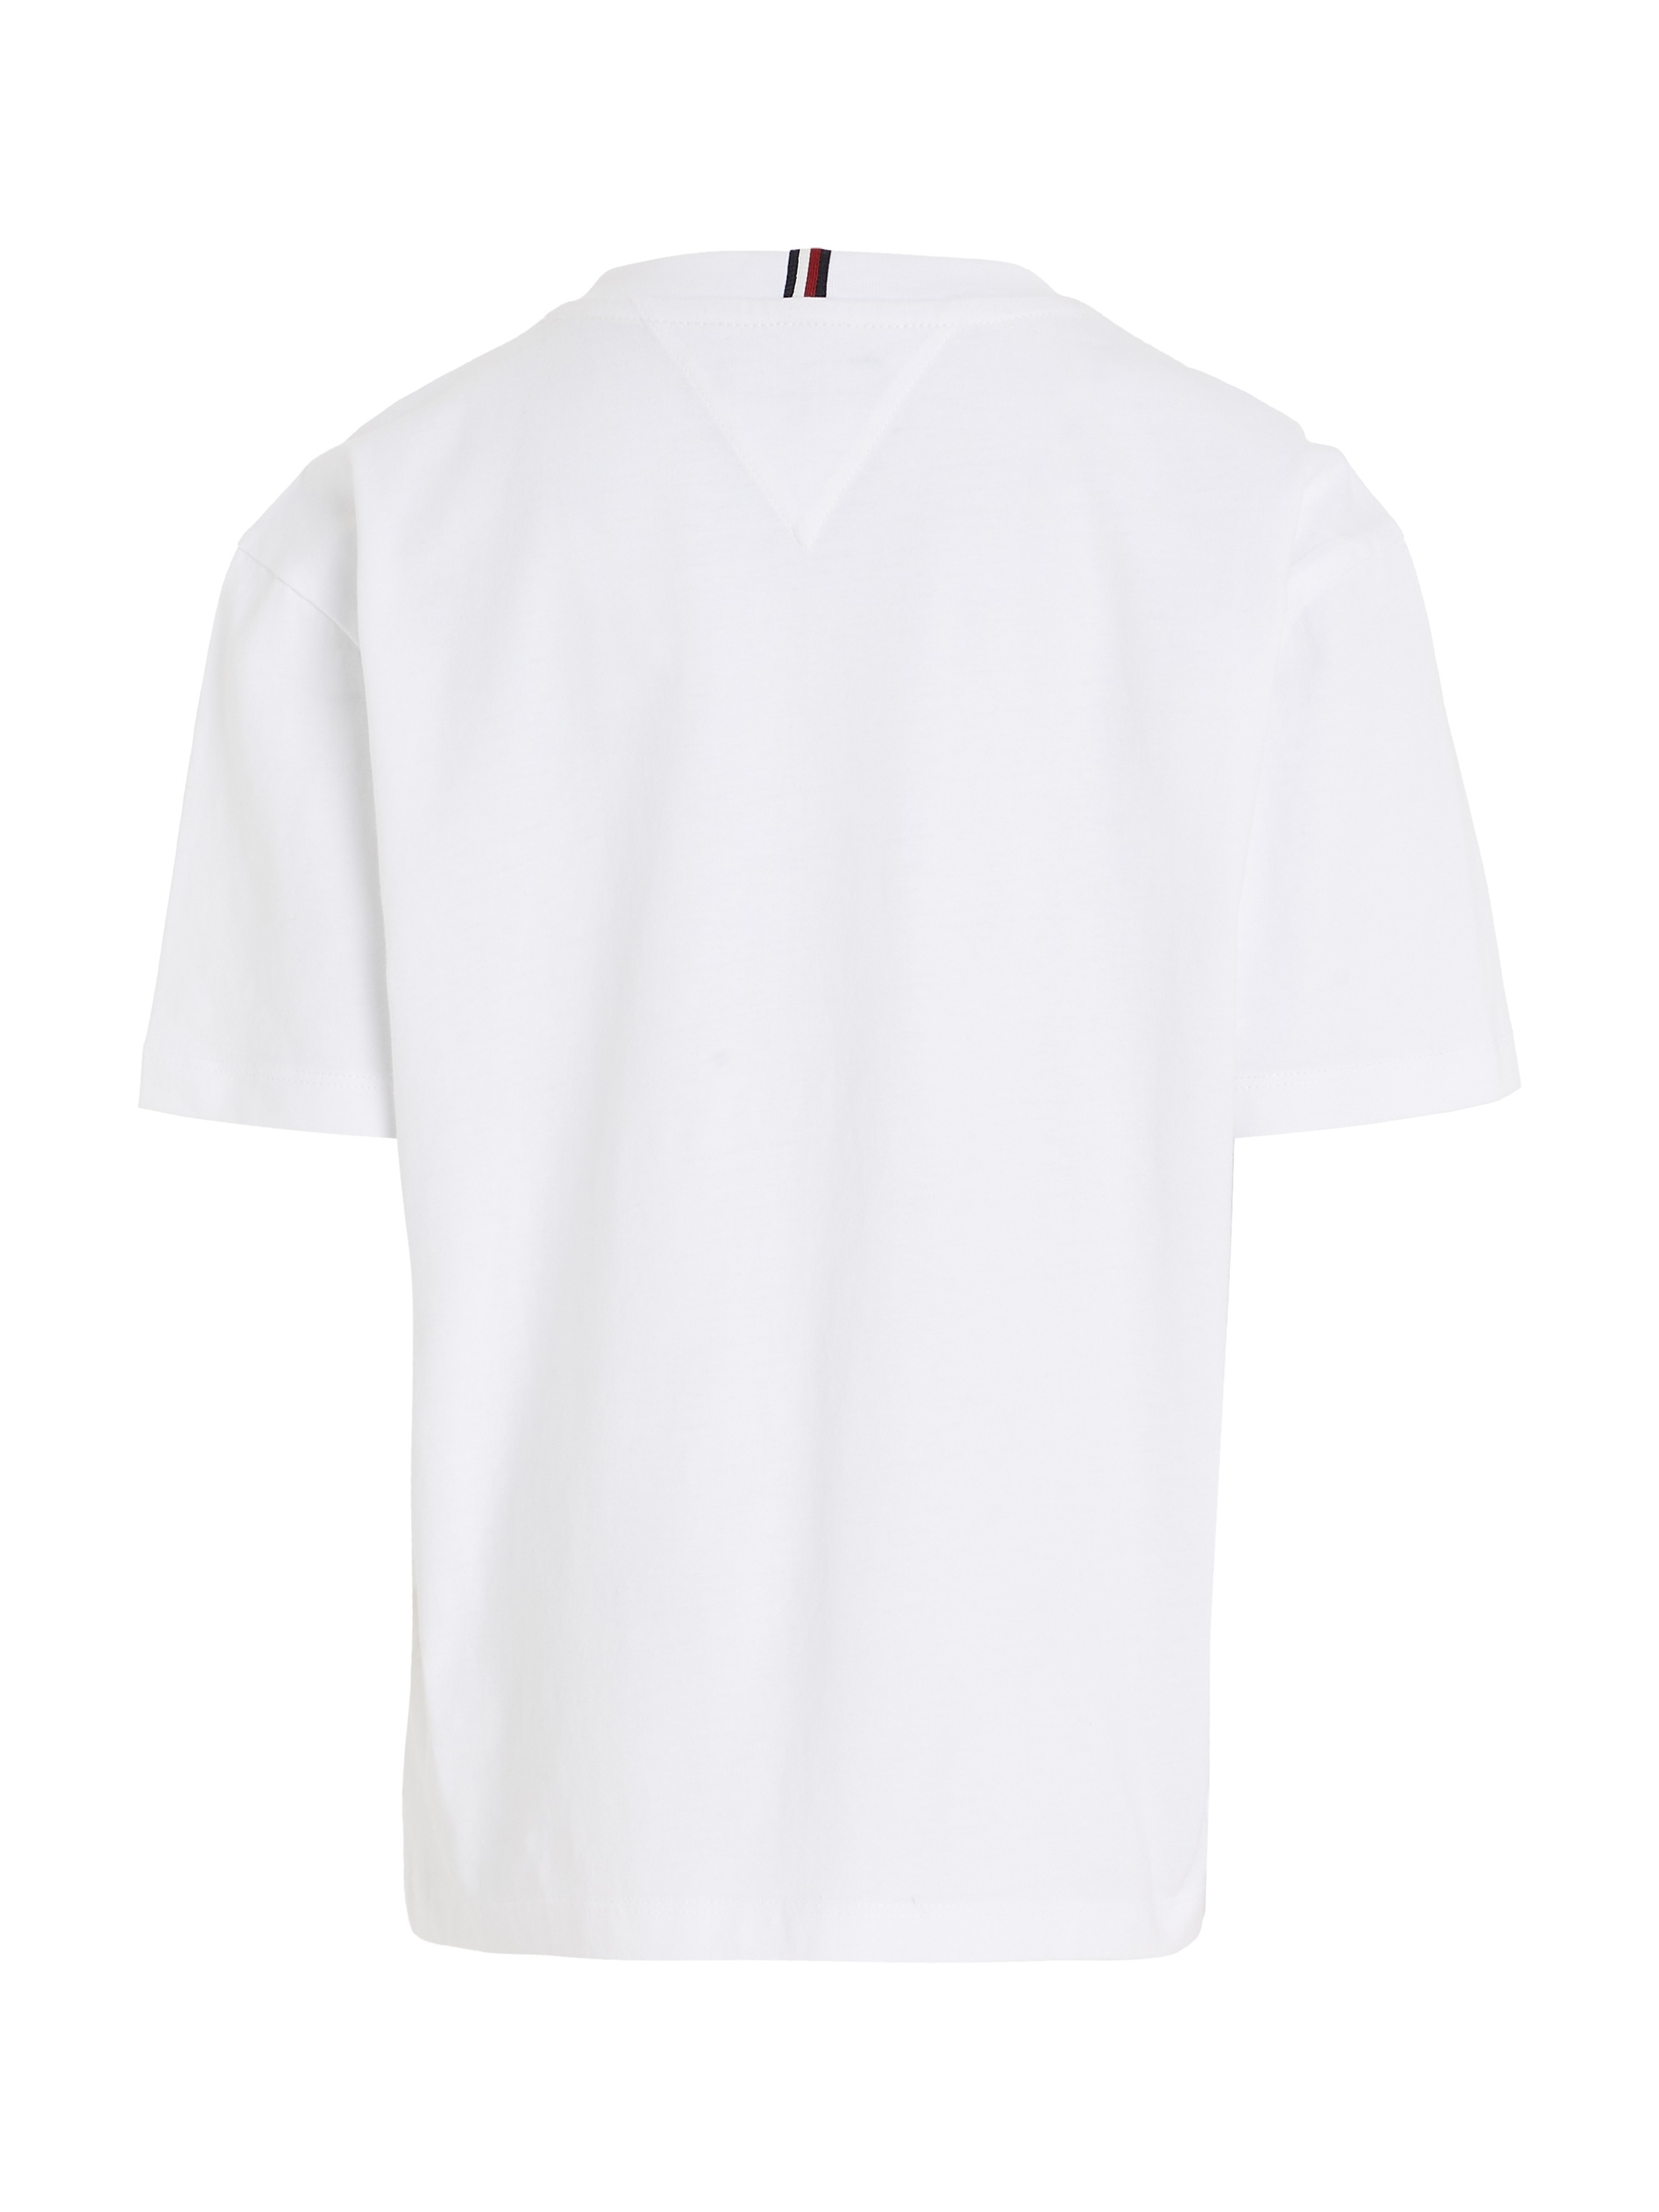 HILFIGER versandkostenfrei »TOMMY shoppen ohne Mindestbestellwert Hilfiger Trendige FLAG TEE« - T-Shirt Tommy